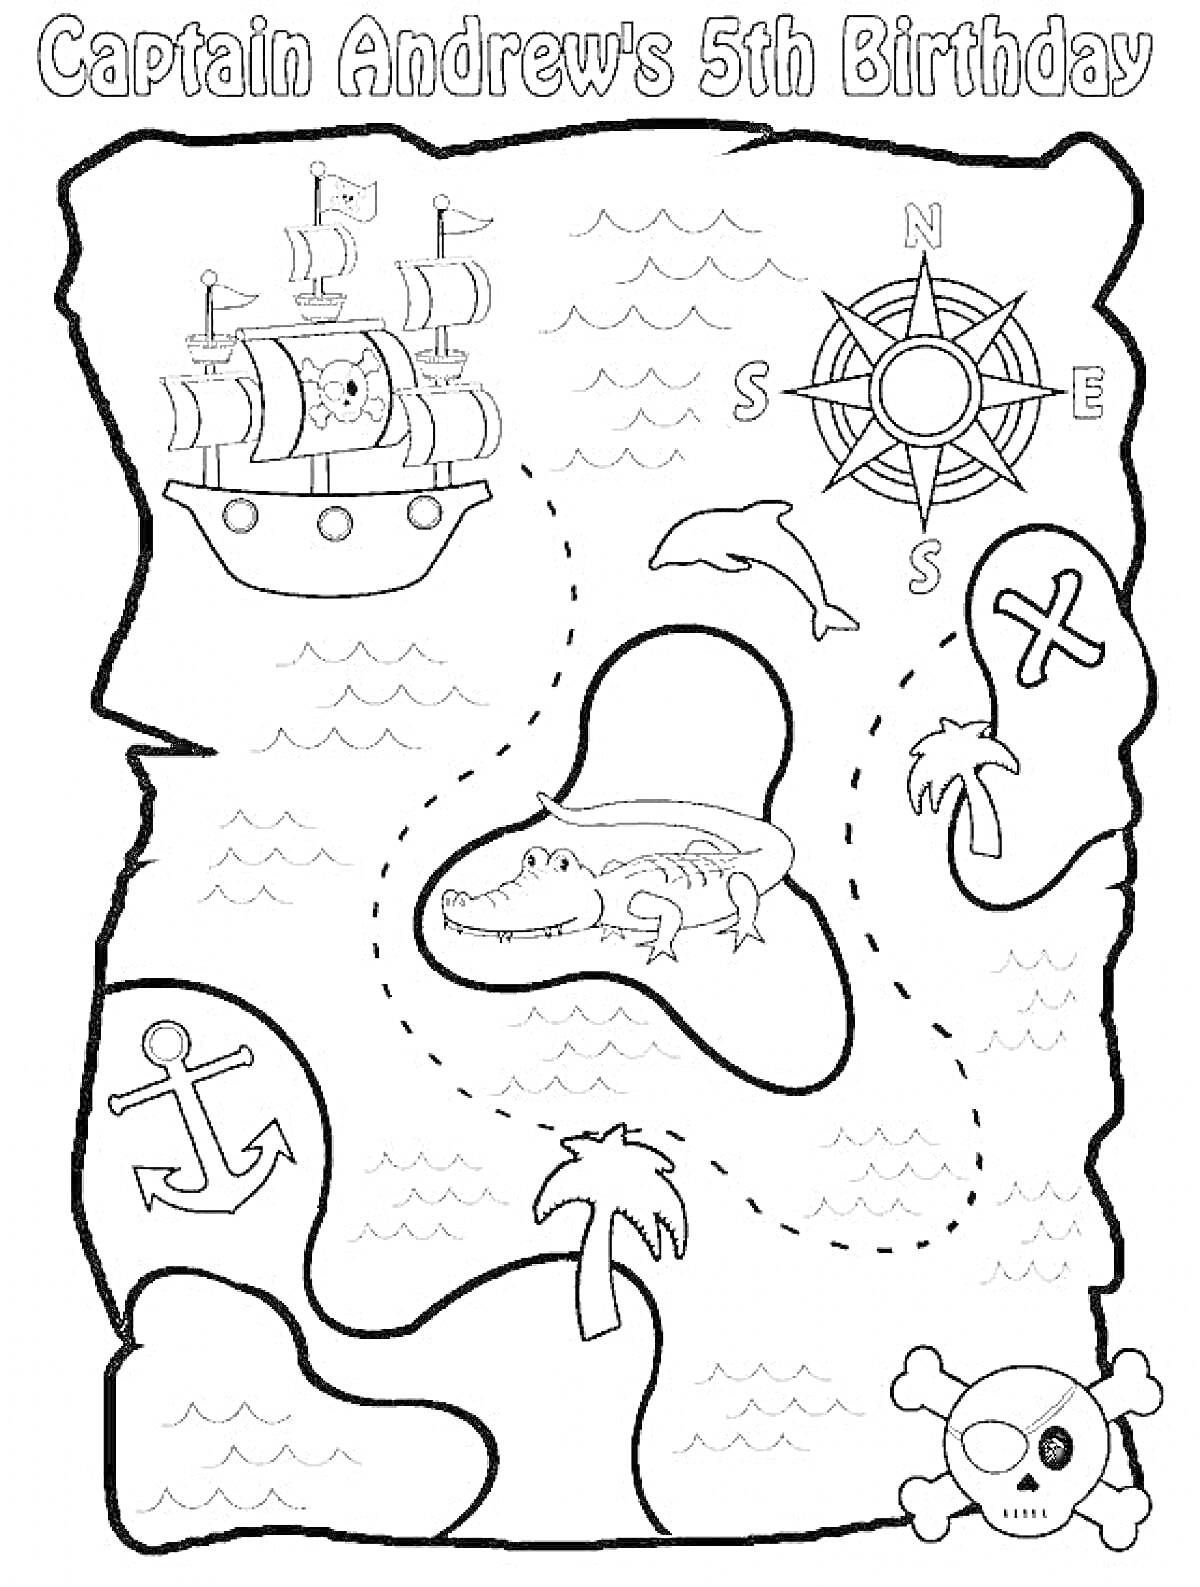 Карта Сокровищ с кораблём, компасом, дельфином, аллигатором на острове, крестом, якорем, пальмой и черепом с костями